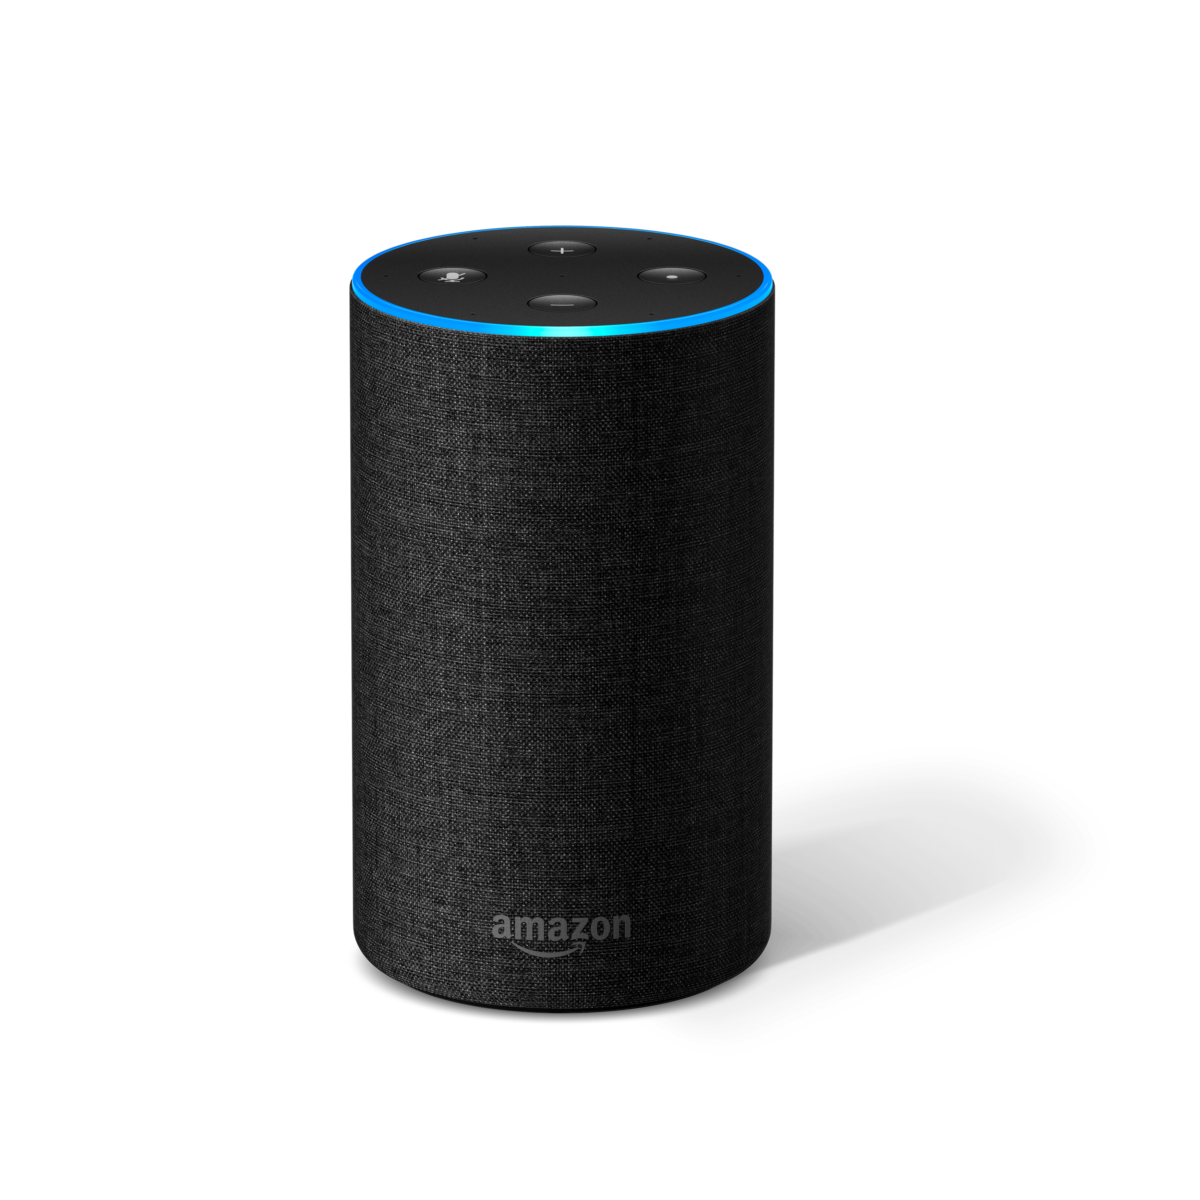 Yhteensopiva Amazon Alexan ja Google Homen kanssa. Husqvarna Automower® ryhtyy työhön, kun sille antaa äänikomennon älykaiuttimen kautta.